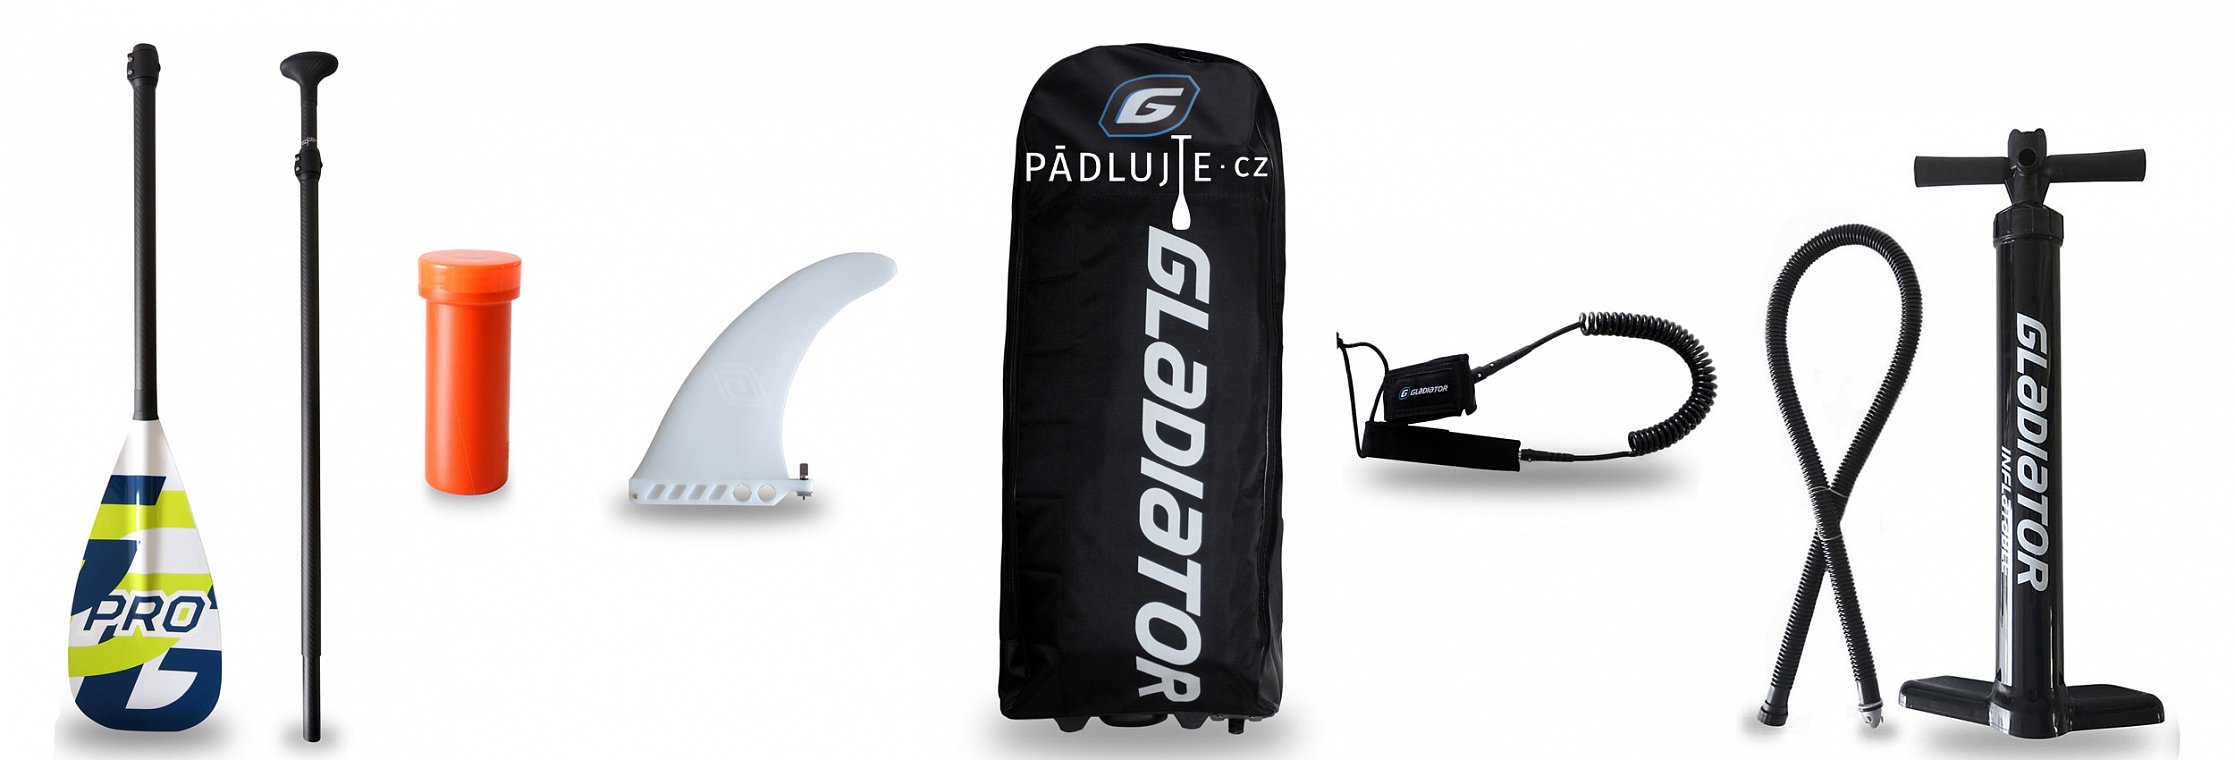 GLADIATOR PRO s pádlem - nafukovací paddleboard